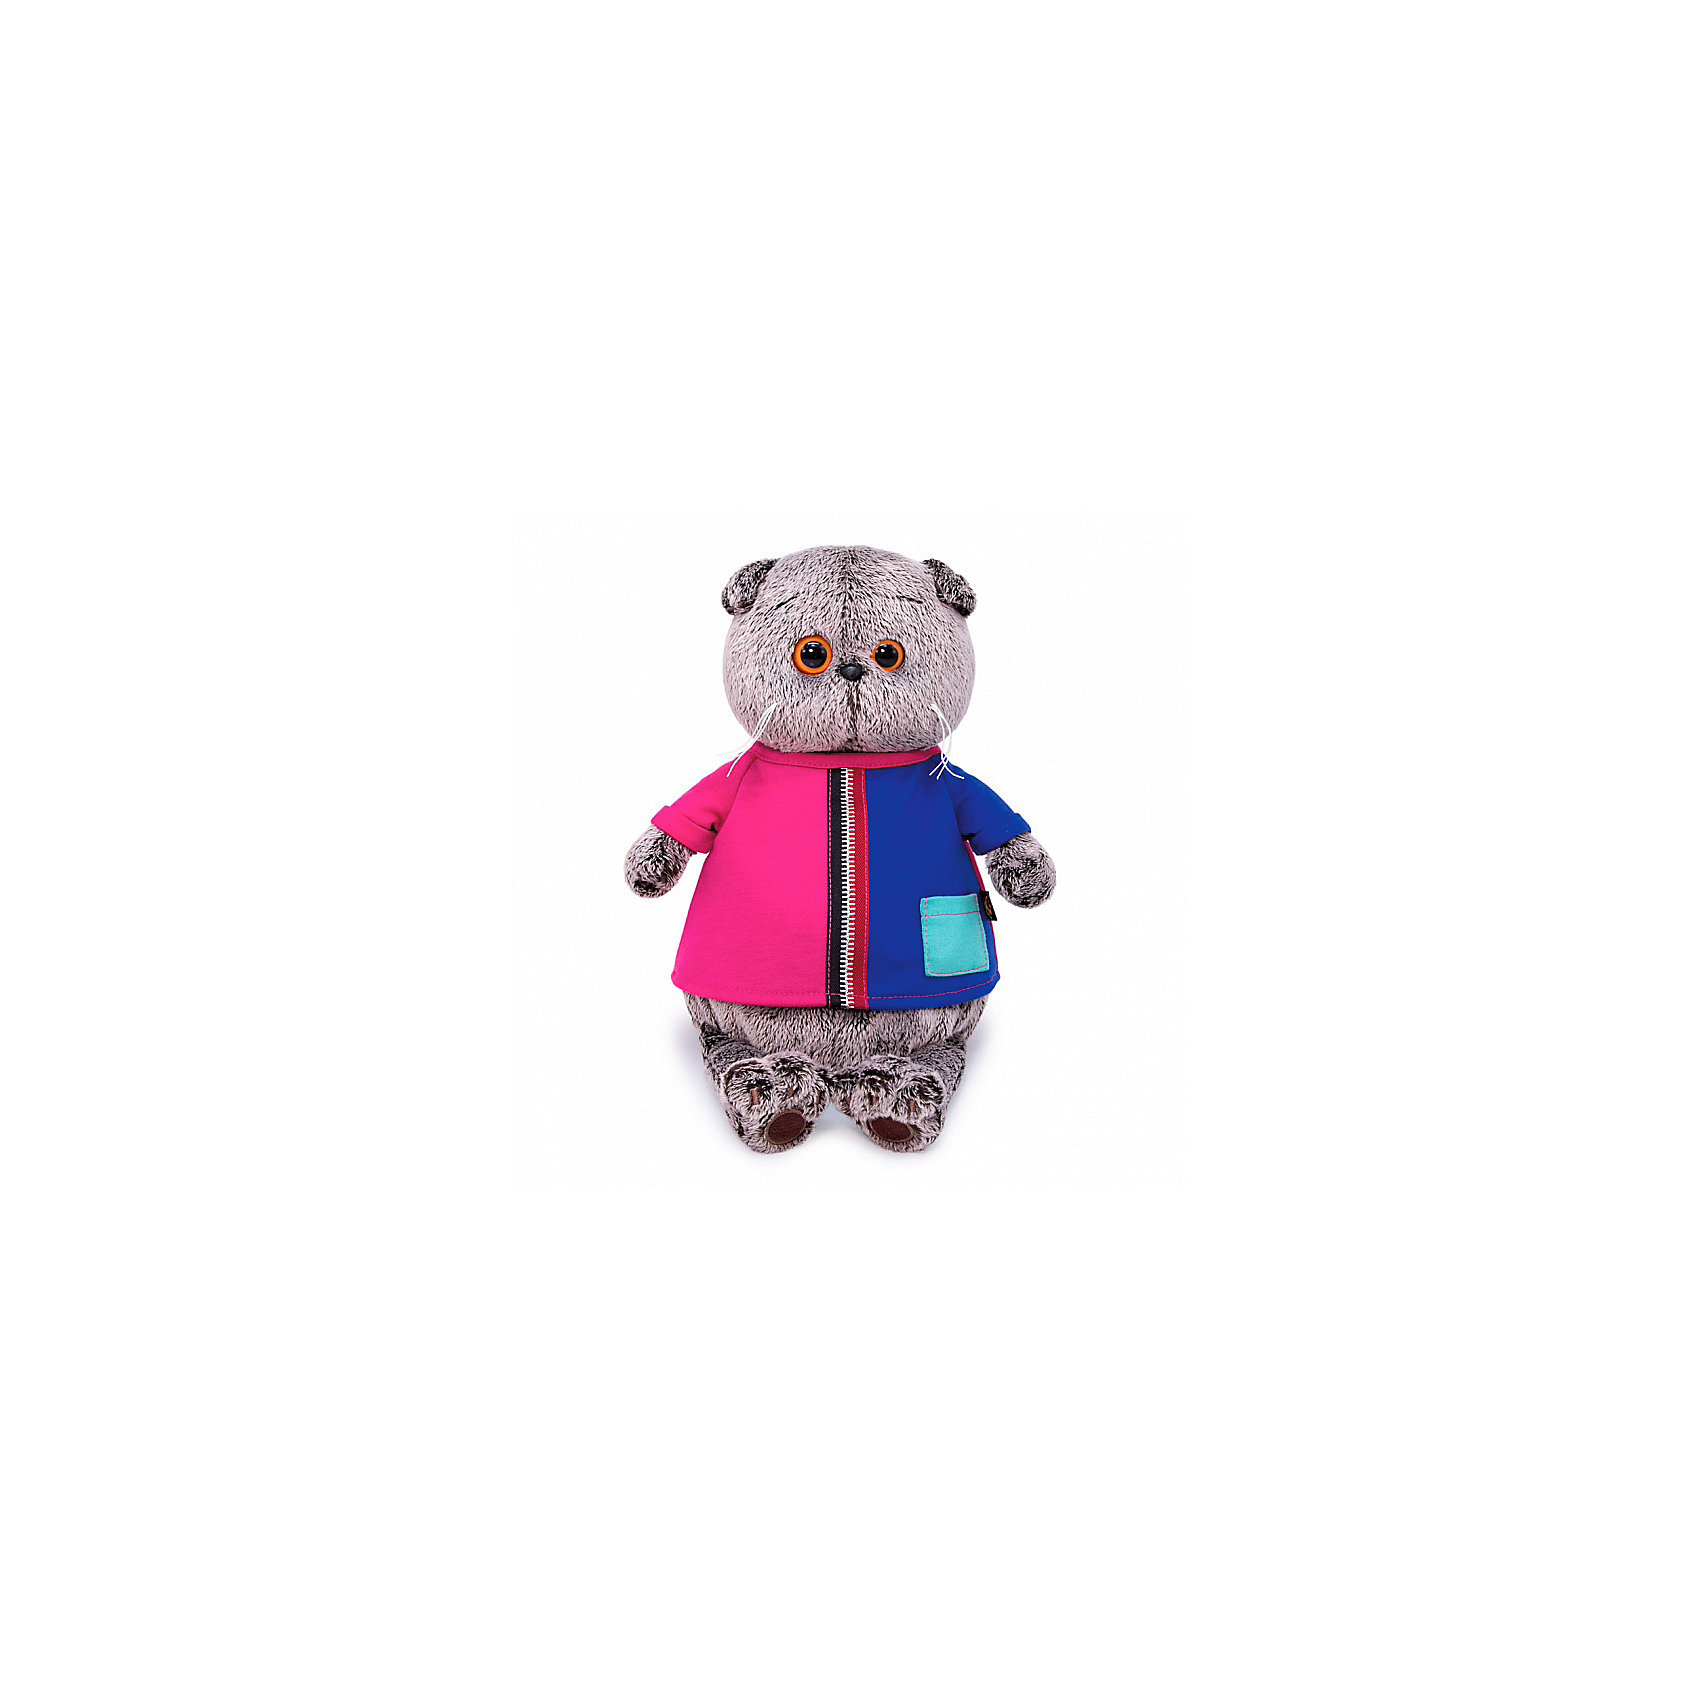 Мягкая игрушка Кот Басик в двухцветной футболке, 22 см Budi Basa 16816165